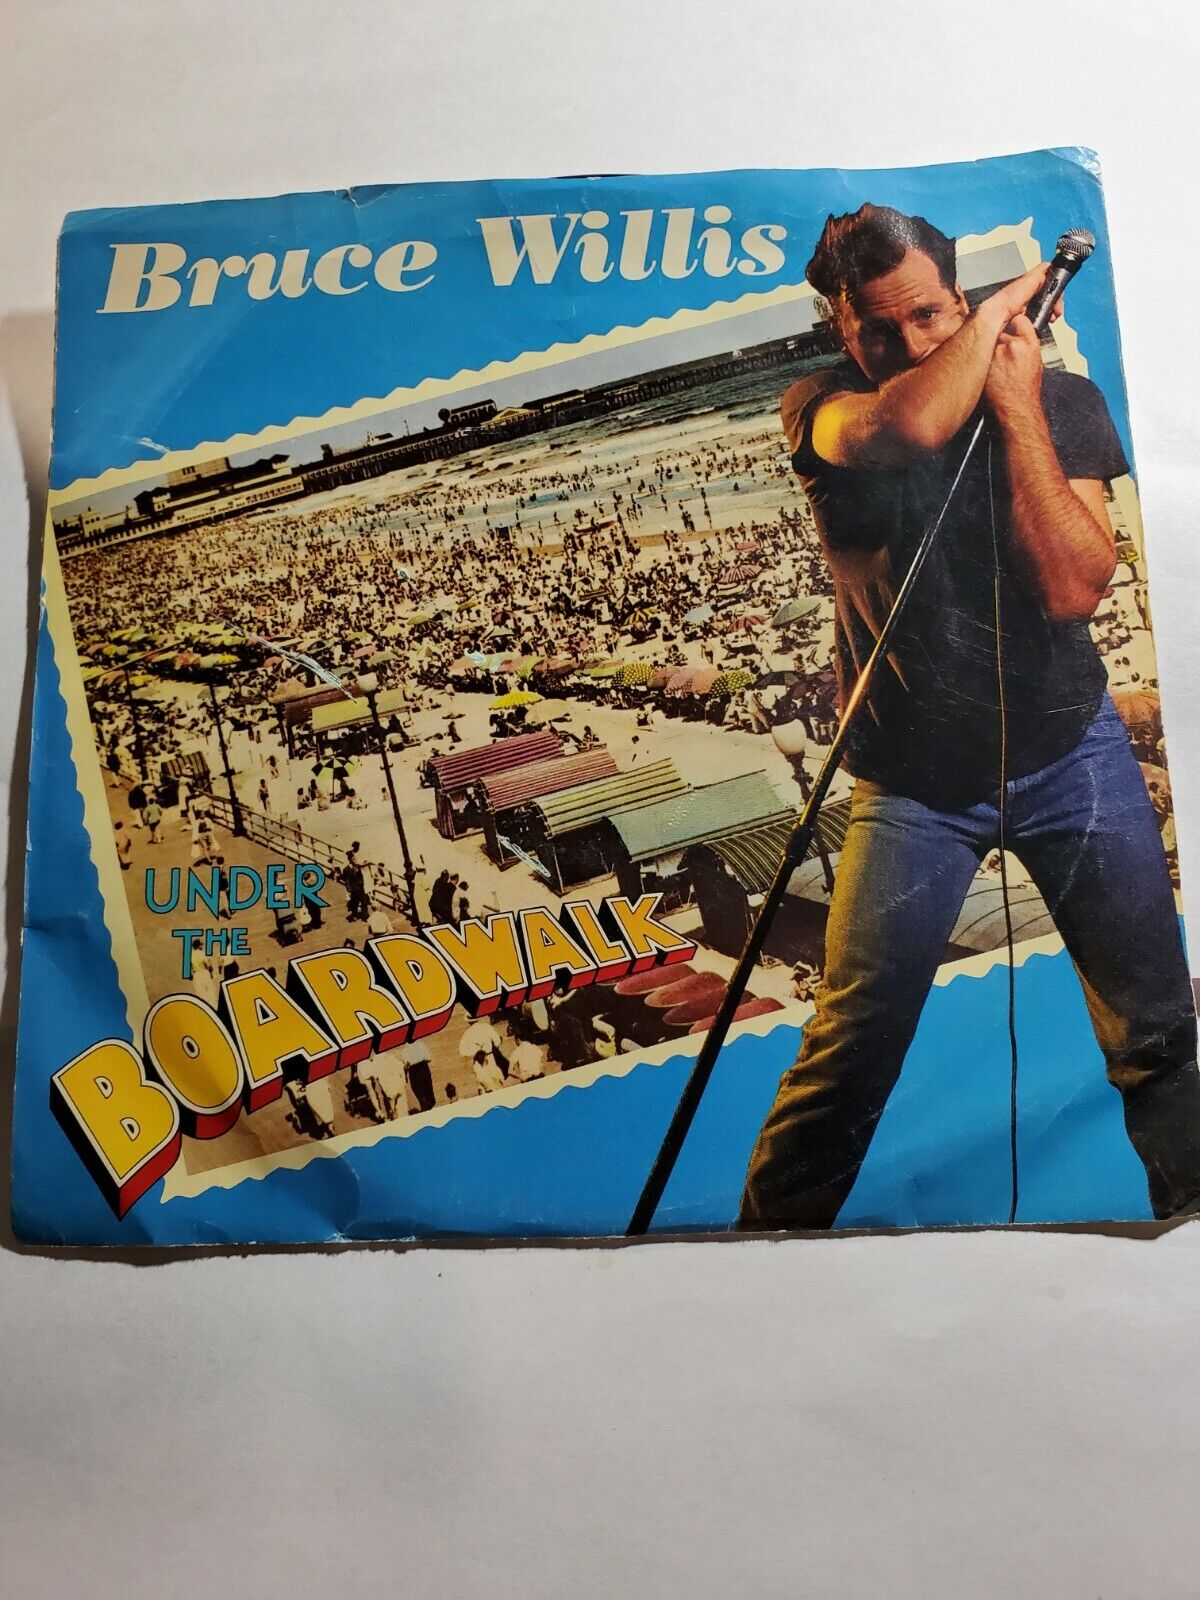 Bruce Willis - Under The Boardwalk 7